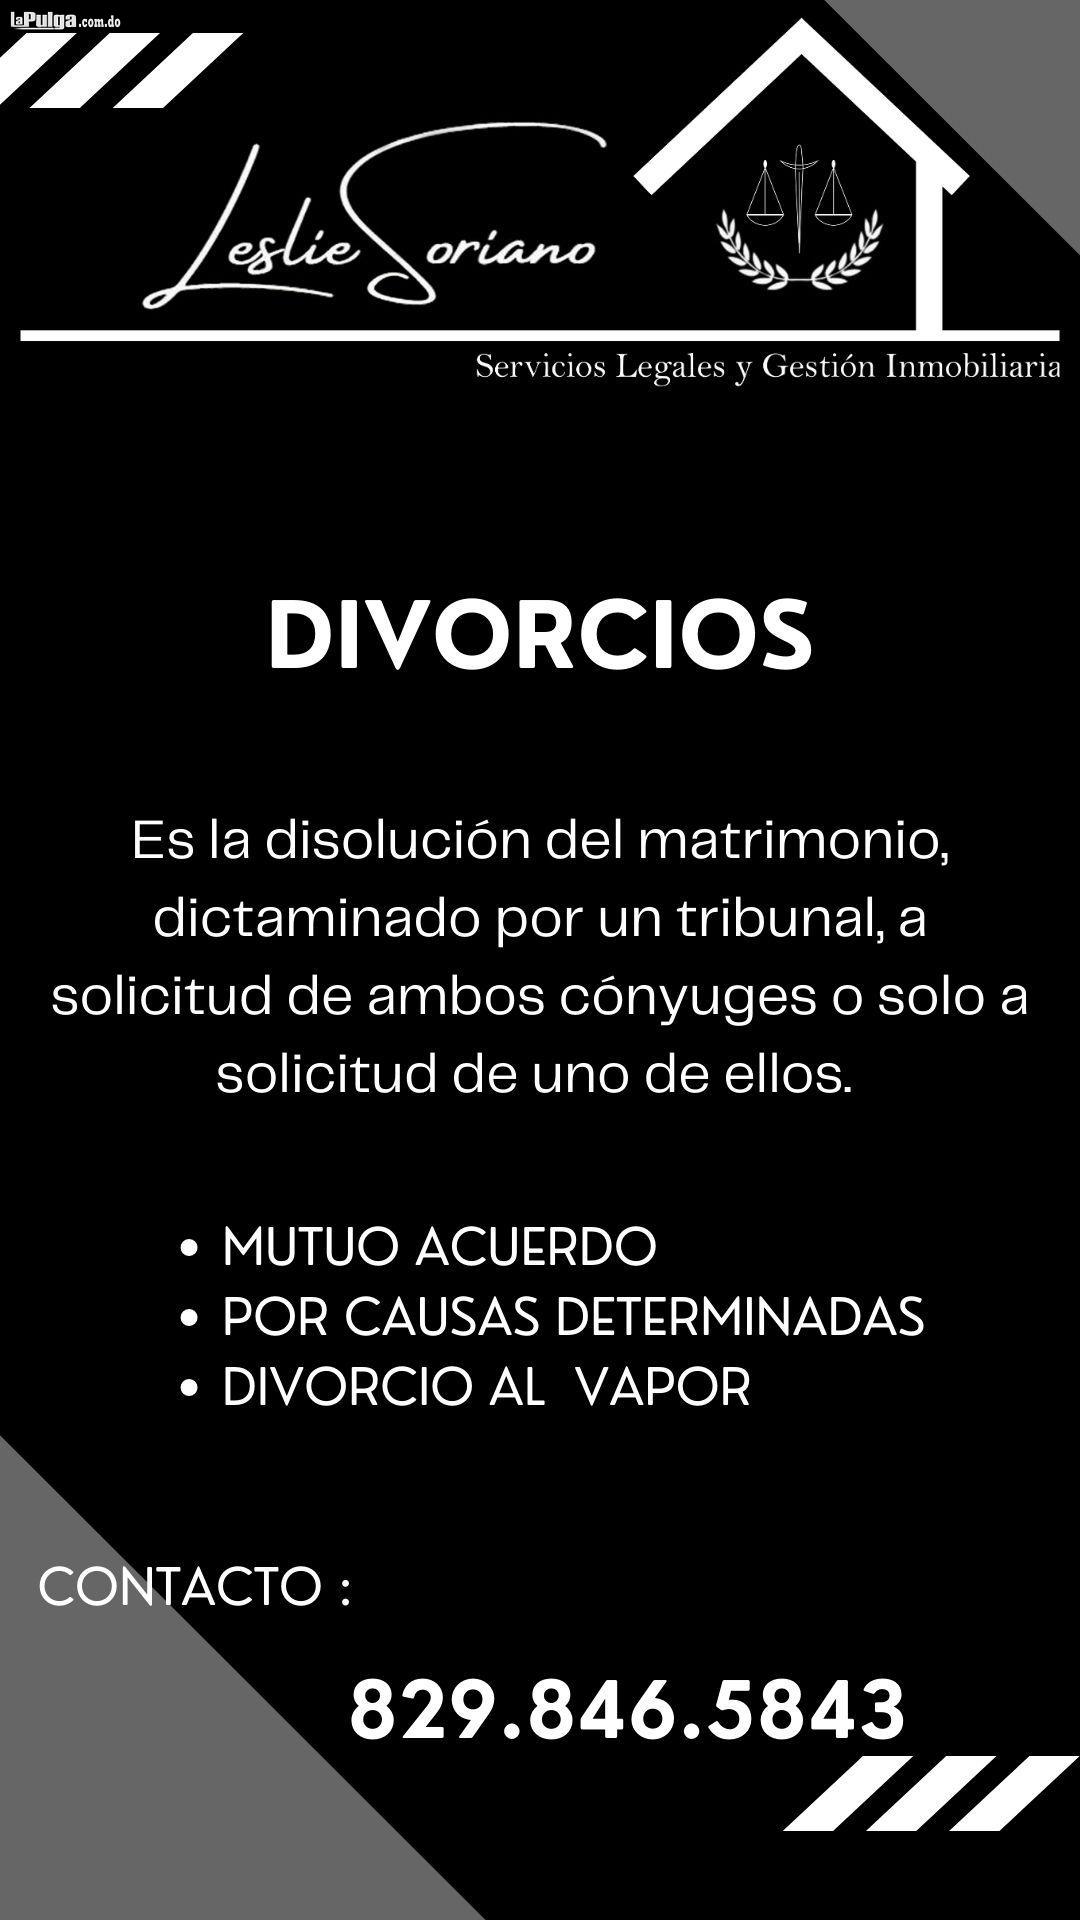 Divorcios Permiso de salida Menores Traducciones Traspaso Foto 7152212-1.jpg